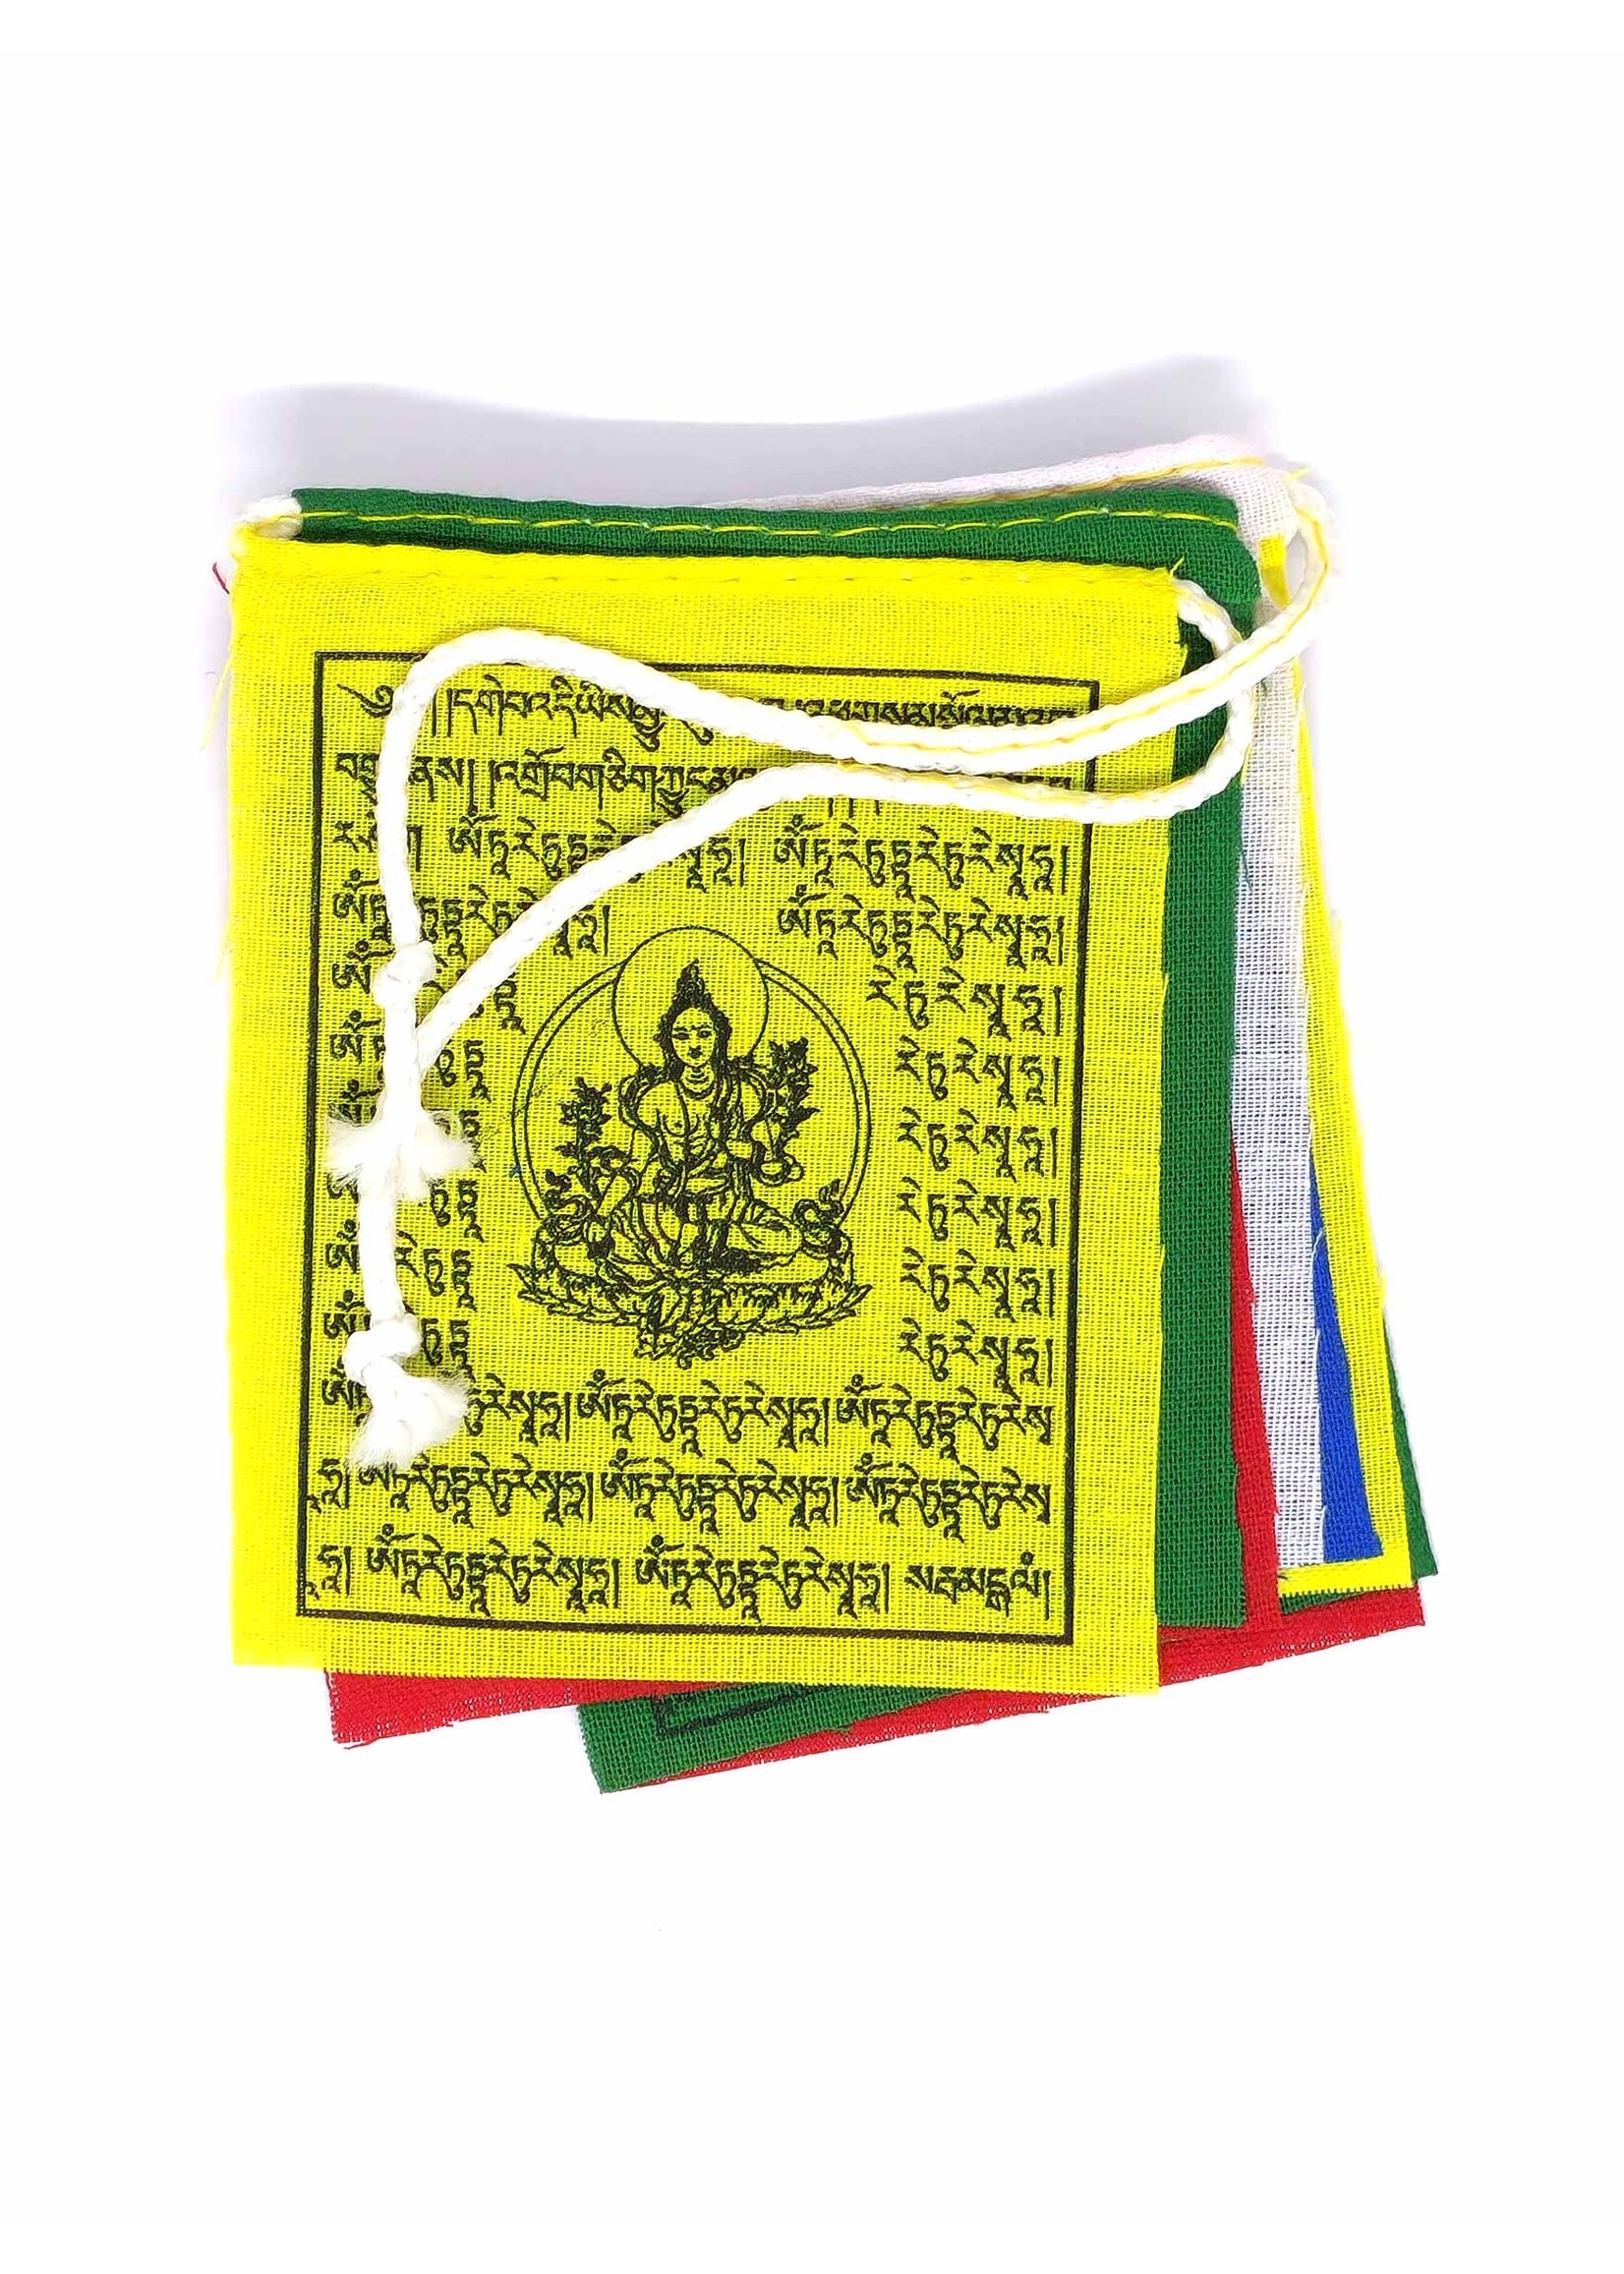 Tibetische mini Gebetsfahnen aus Baumwolle, Grüne Tara, 7 x 8.5 cm, 75 cm